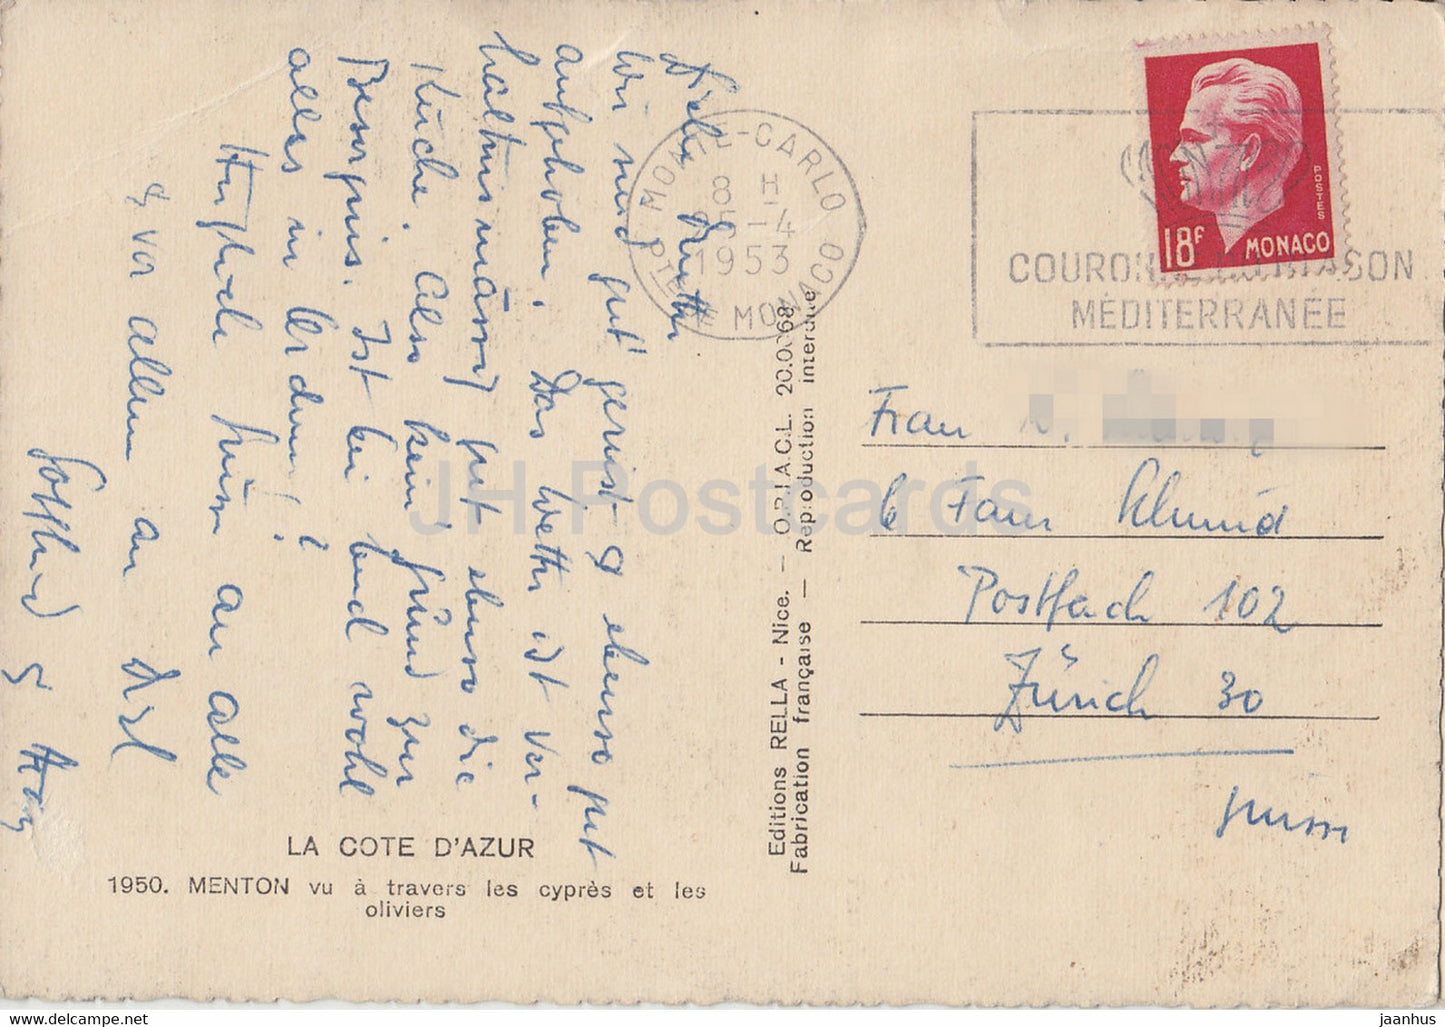 Menton - vu a travers les cypres et les oliviers - cyprès et oliviers - carte postale ancienne - 1953 - France - occasion